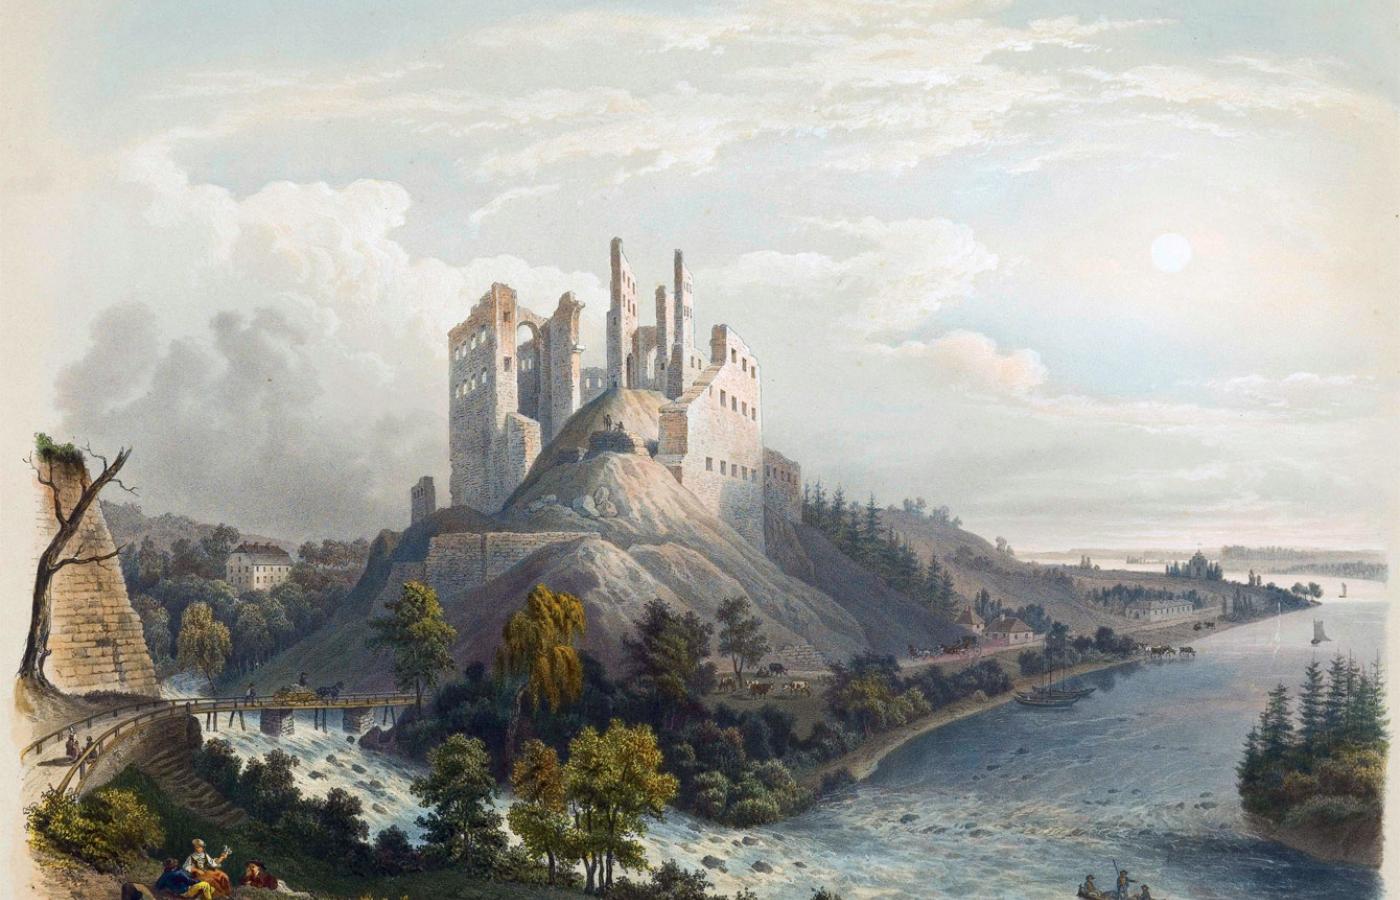 Ruiny zamku arcybiskupów ryskich, zbudowanego w Koknese nad Dźwiną, na schrystianizowanych ziemiach Łatgalów; obraz z XIX w.